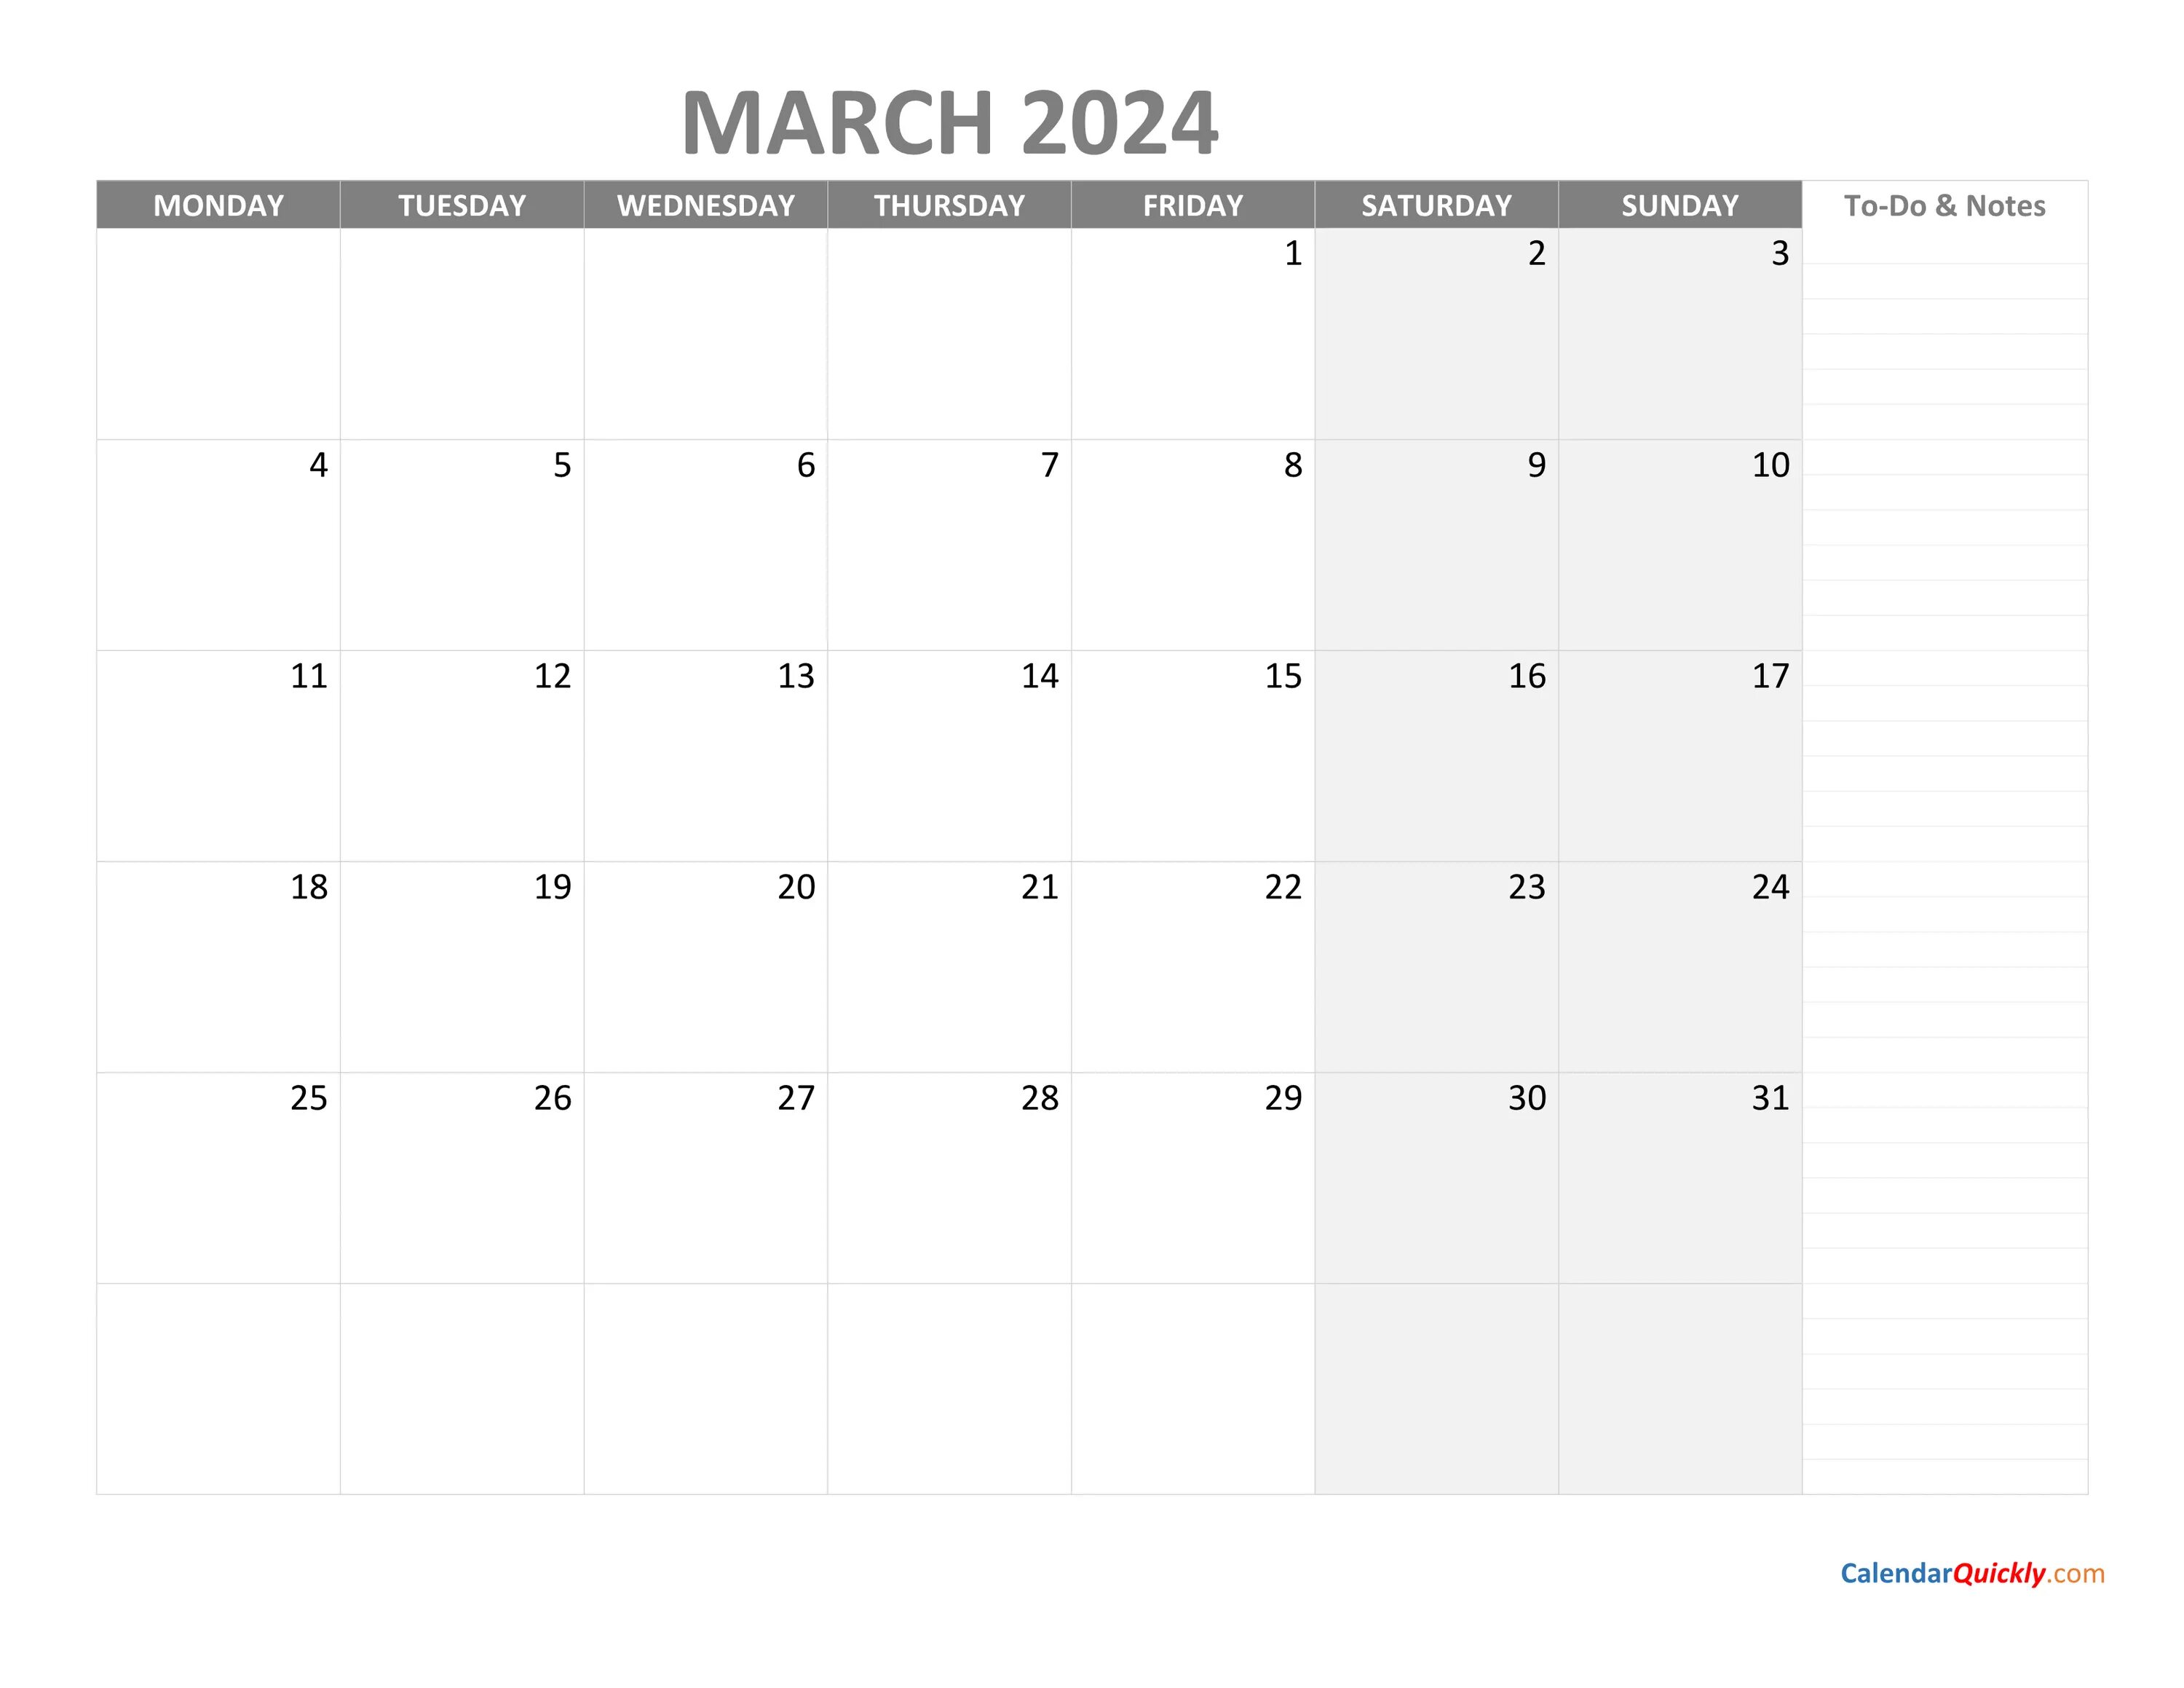 Календарь март апрель май 2024 распечатать. January 2024. January 2024 Calendar. Планер на 2023 год. Календарь январь 2024 с заметками.